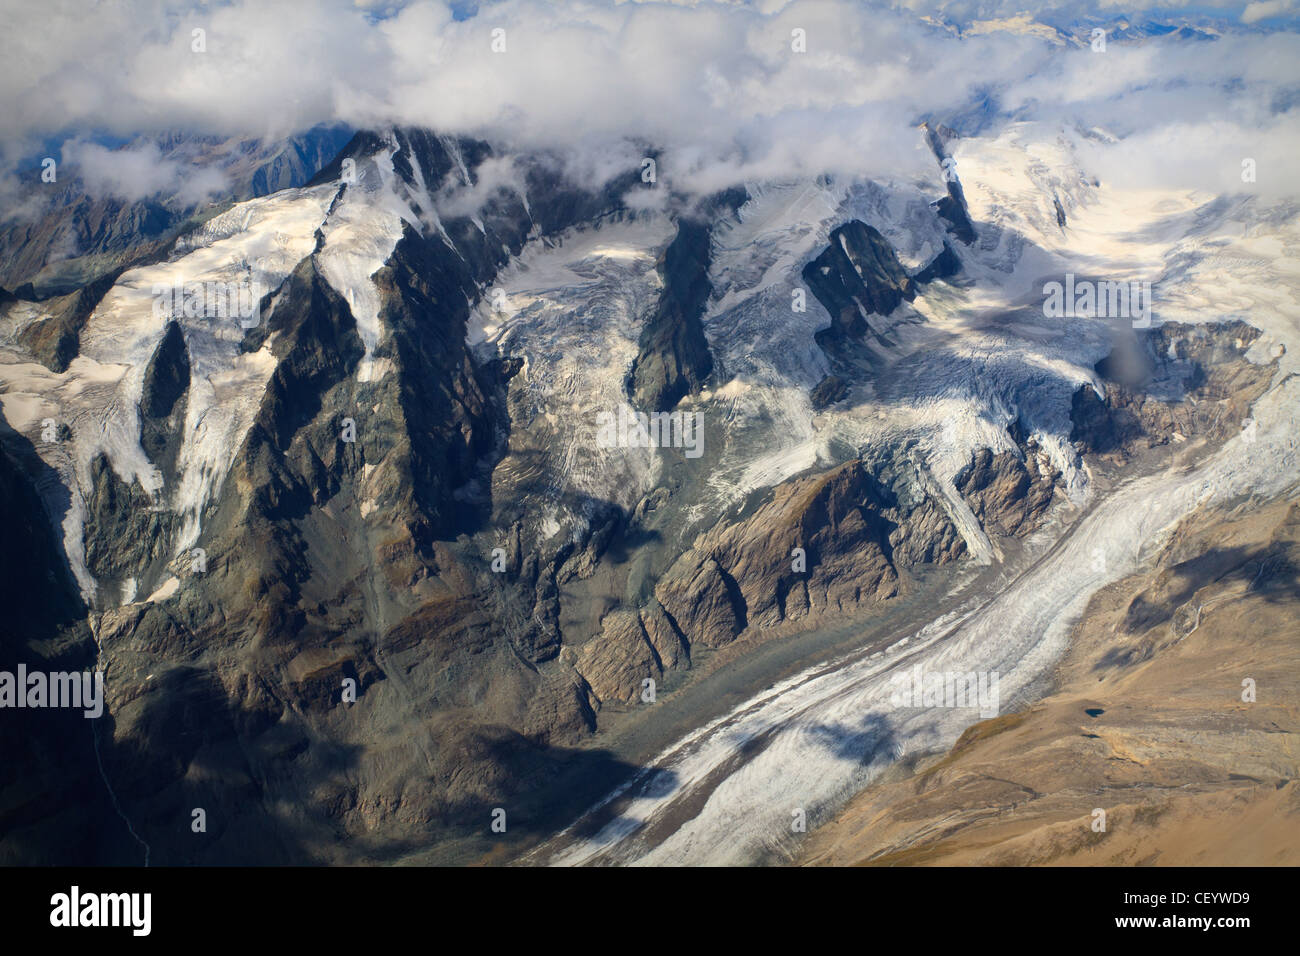 Pasterze-Gletscher am Großglockner-massiv - Luftaufnahme, Österreich Stockfoto